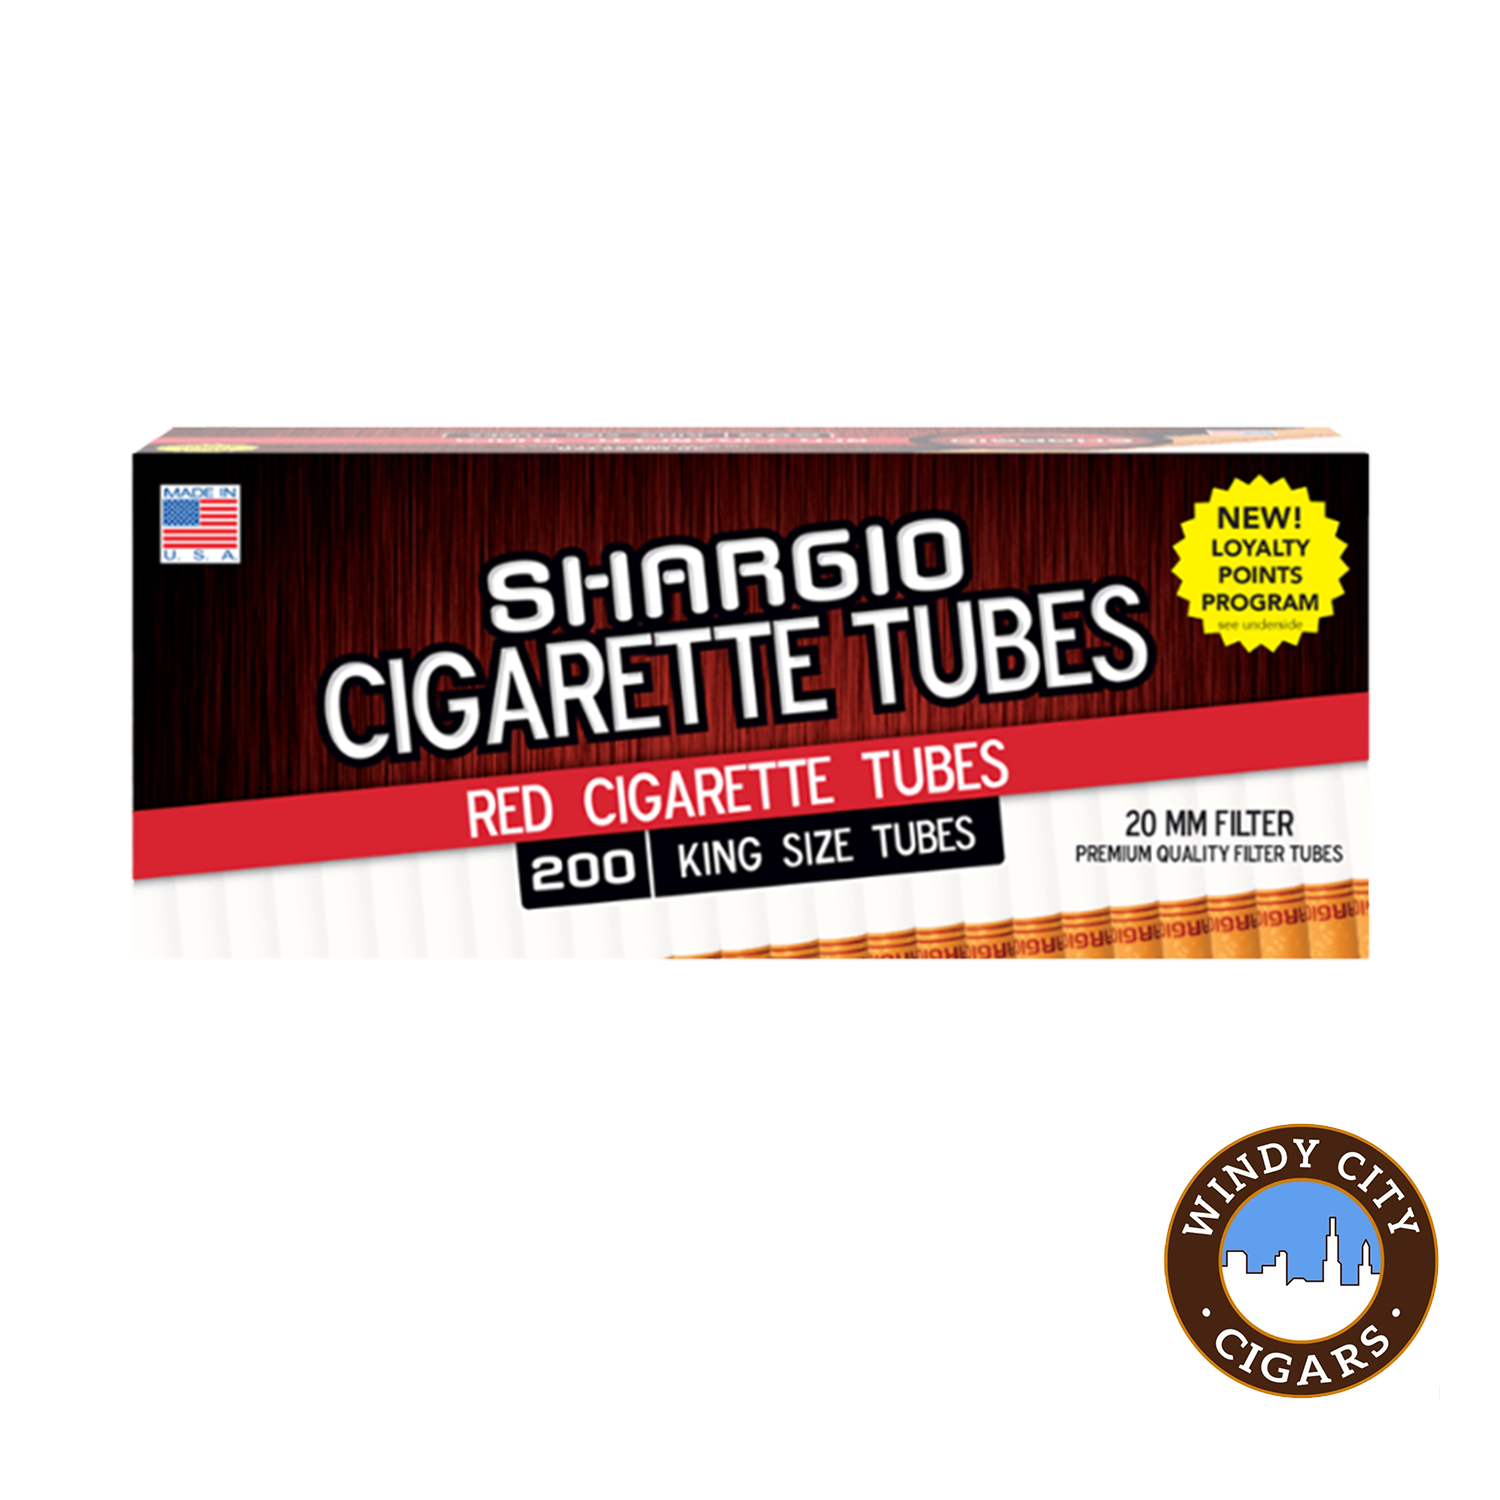 Cigarette Filter Tubes Online - Best Price